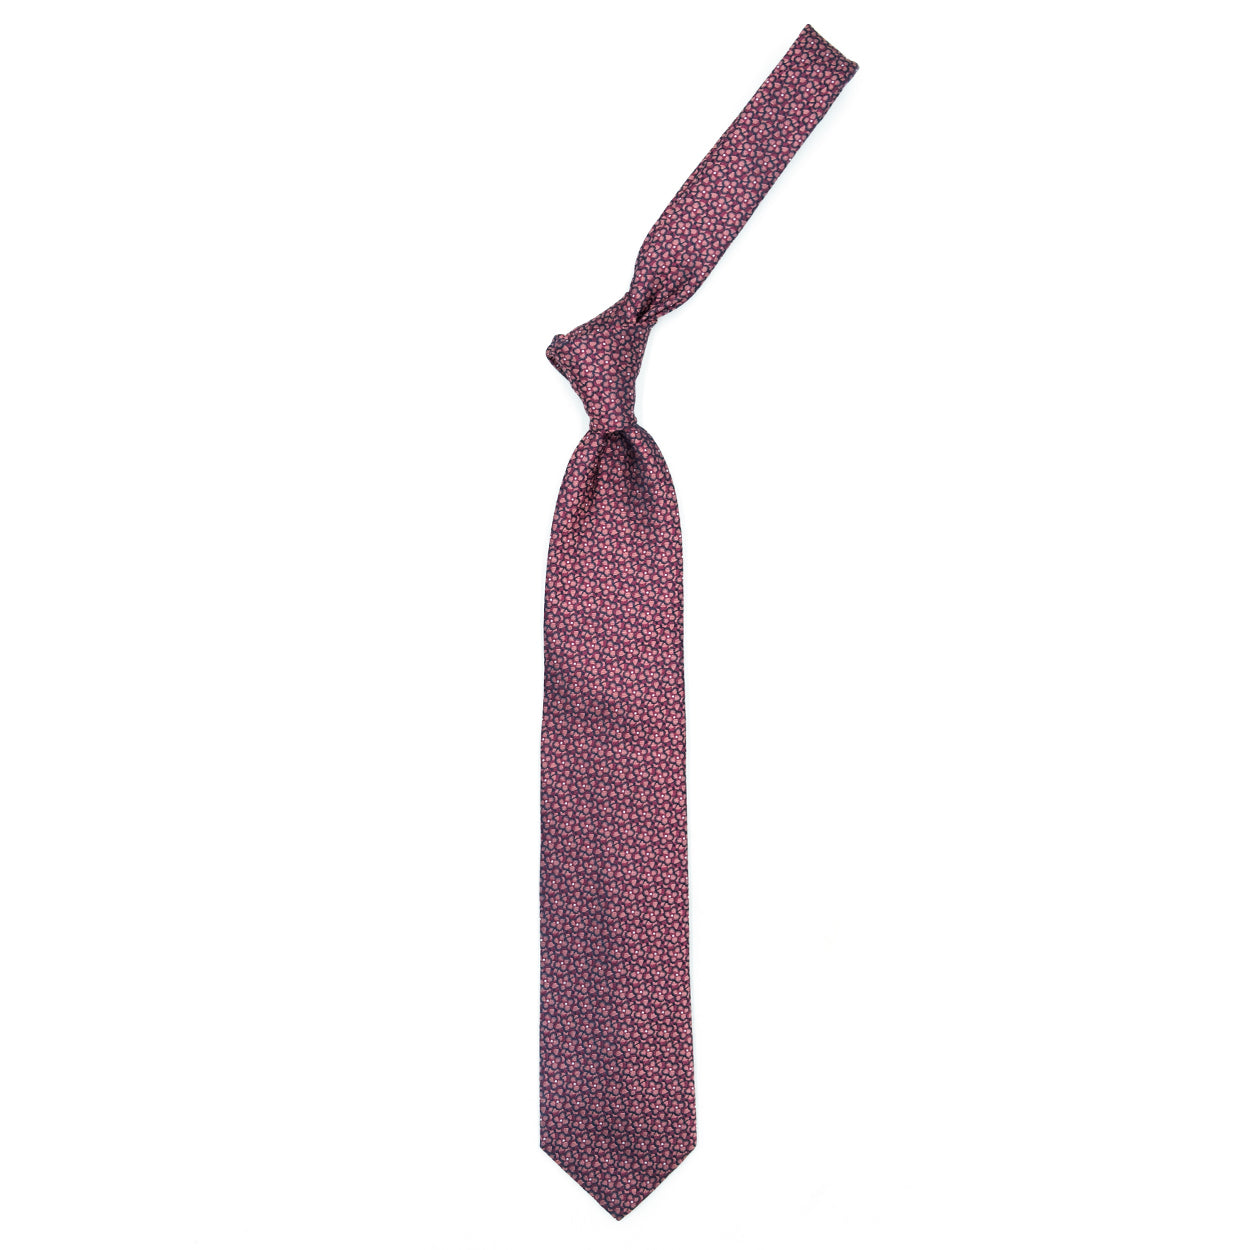 Cravatta rosa con fiori tono su tono e puntini bianchi